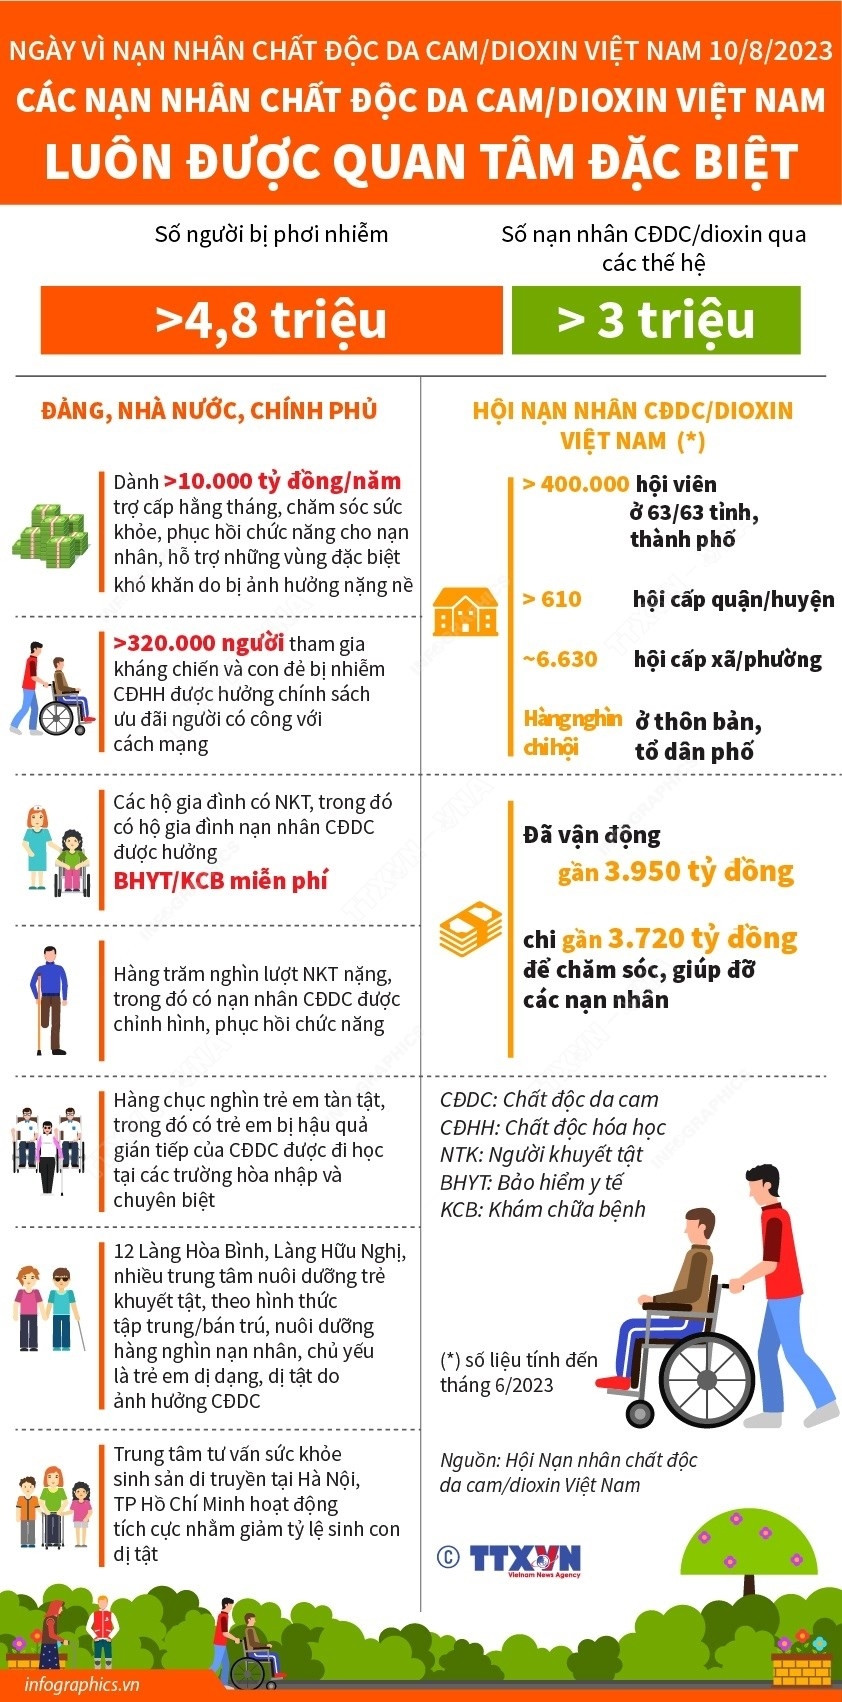 [Infographics] Quan tam dac biet cac nan nhan chat doc da cam/dioxin hinh anh 1